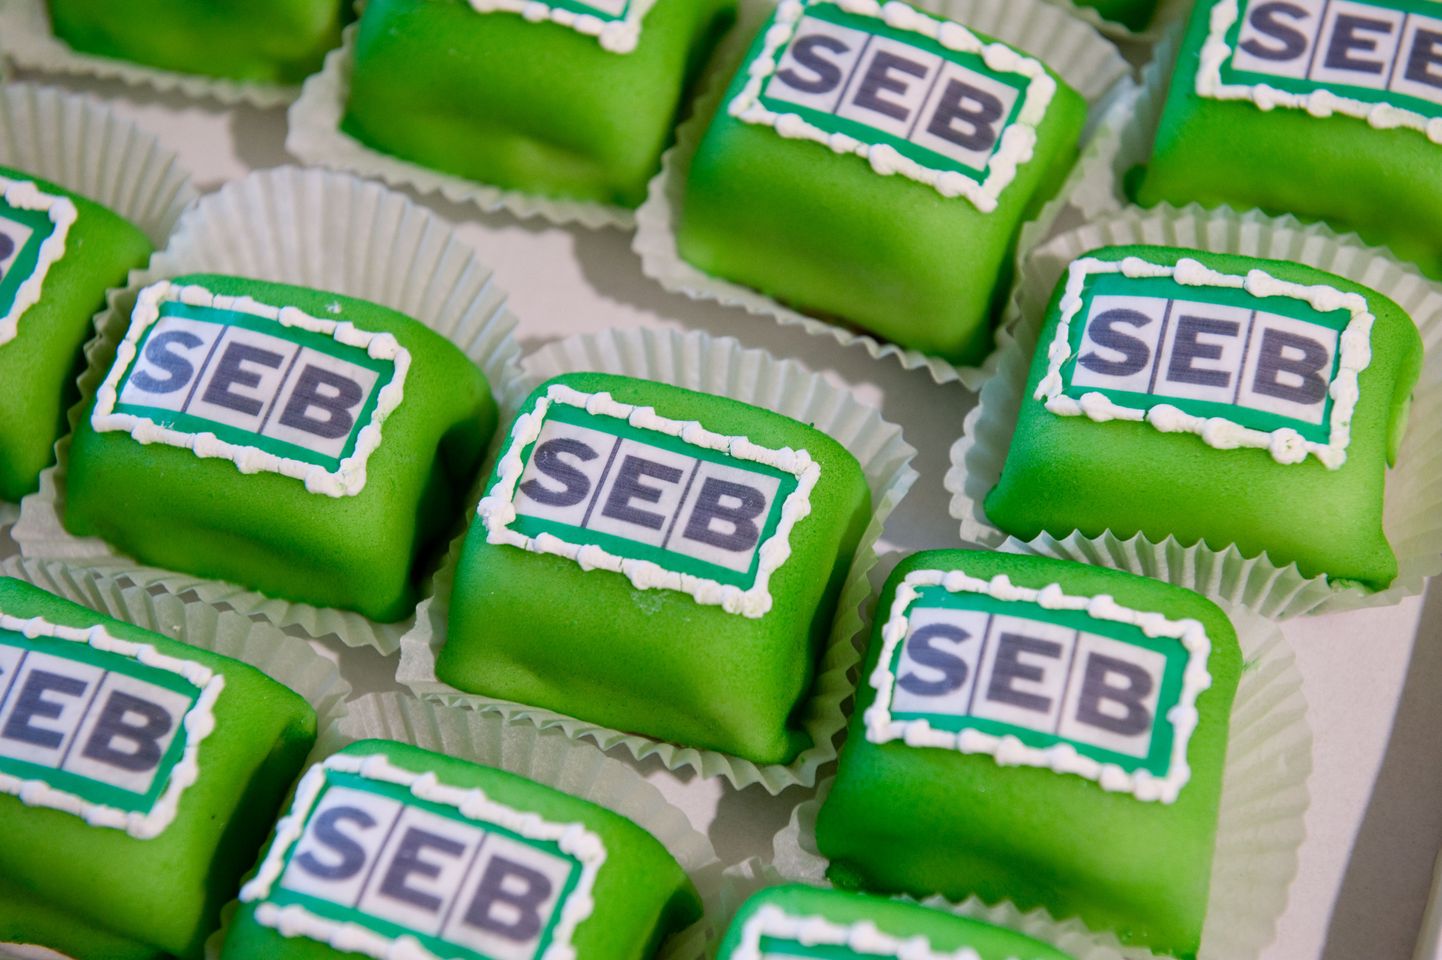 SEB рекомендует прежним клиентам Saldo+ выбрать один из пакетов услуг.